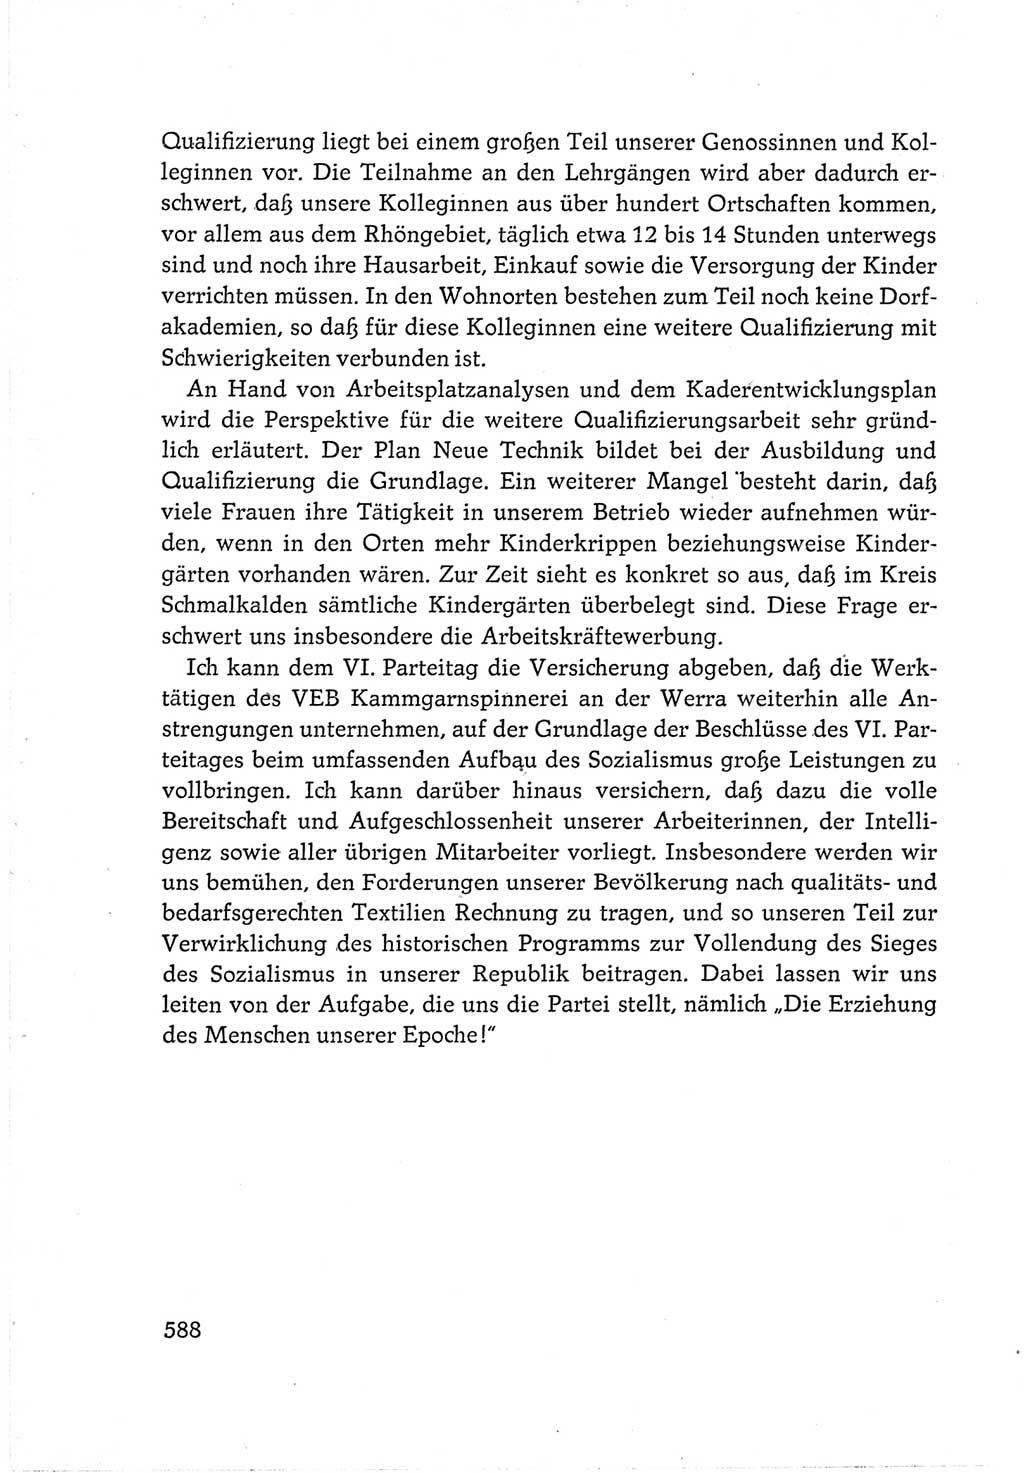 Protokoll der Verhandlungen des Ⅵ. Parteitages der Sozialistischen Einheitspartei Deutschlands (SED) [Deutsche Demokratische Republik (DDR)] 1963, Band Ⅲ, Seite 588 (Prot. Verh. Ⅵ. PT SED DDR 1963, Bd. Ⅲ, S. 588)